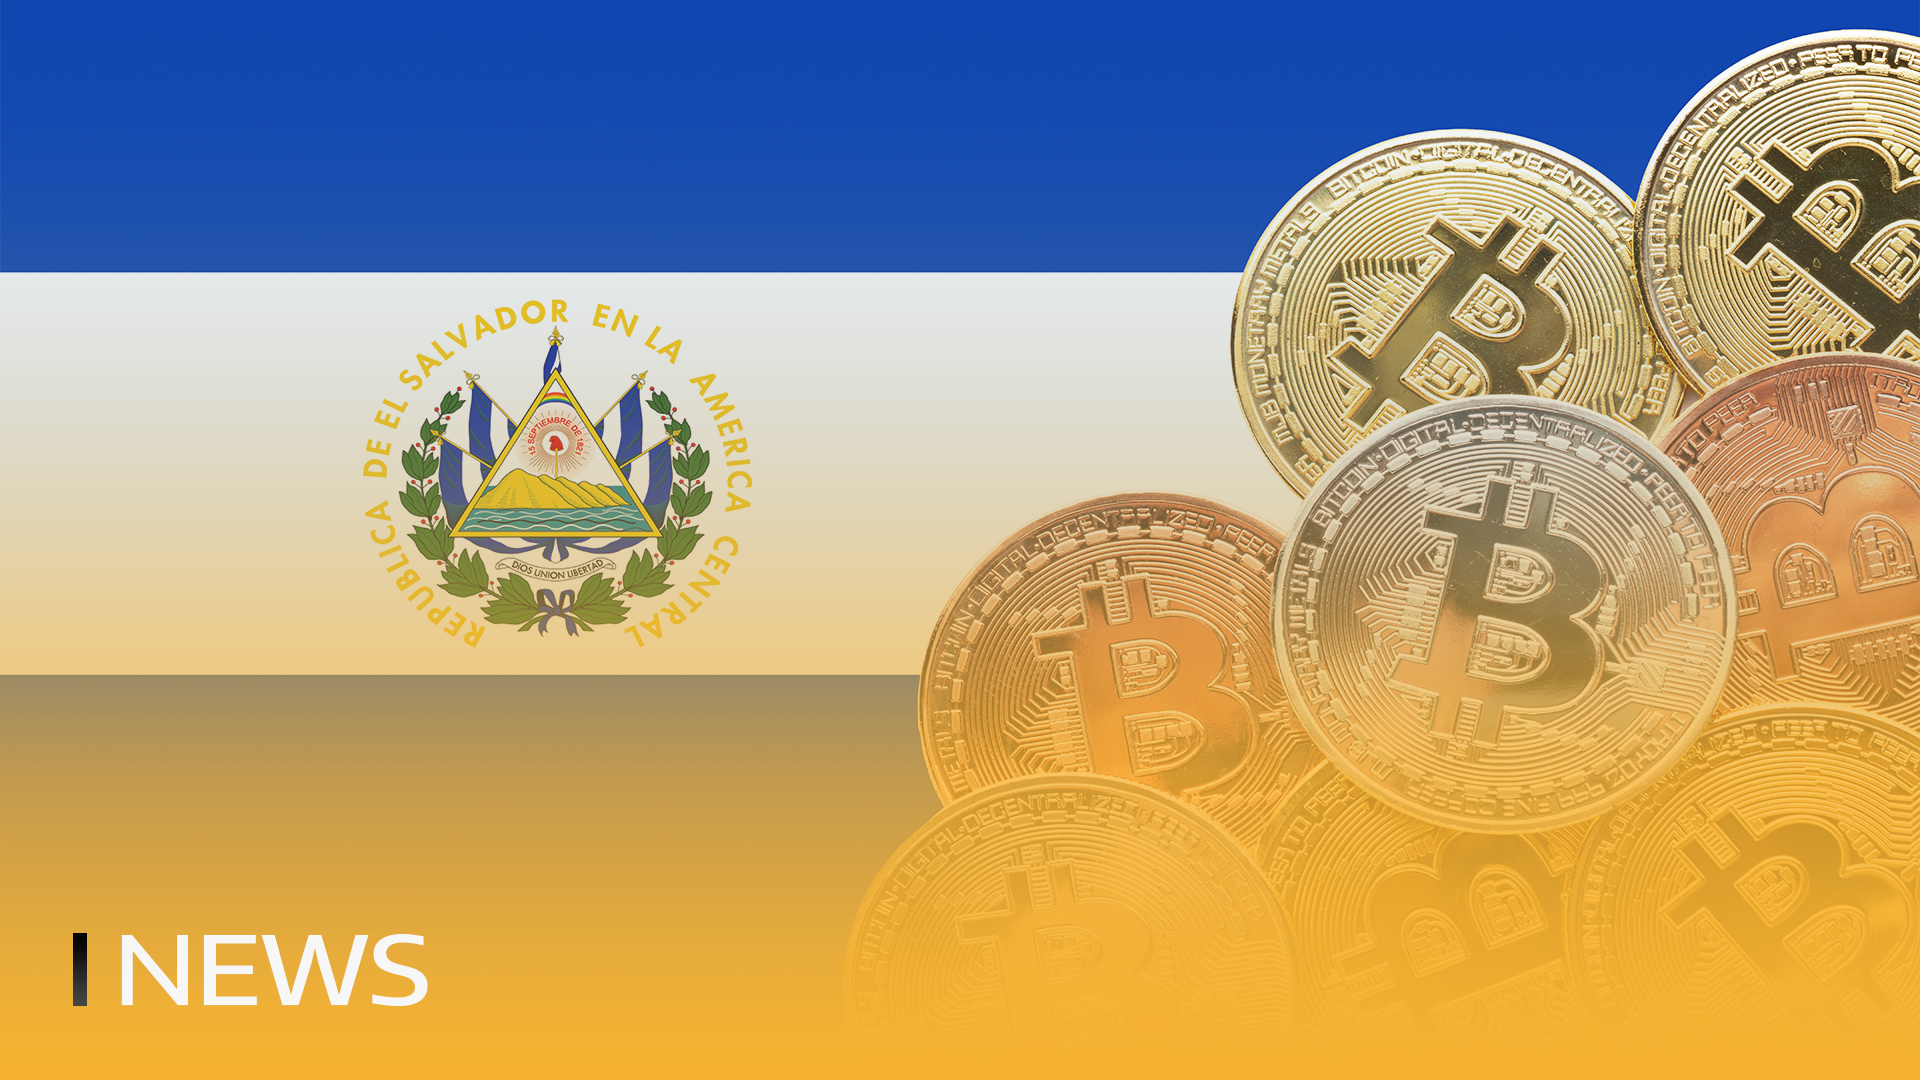 Salwador Bitcoin Holdings osiągnął rekordowy poziom 164 milionów dolarów